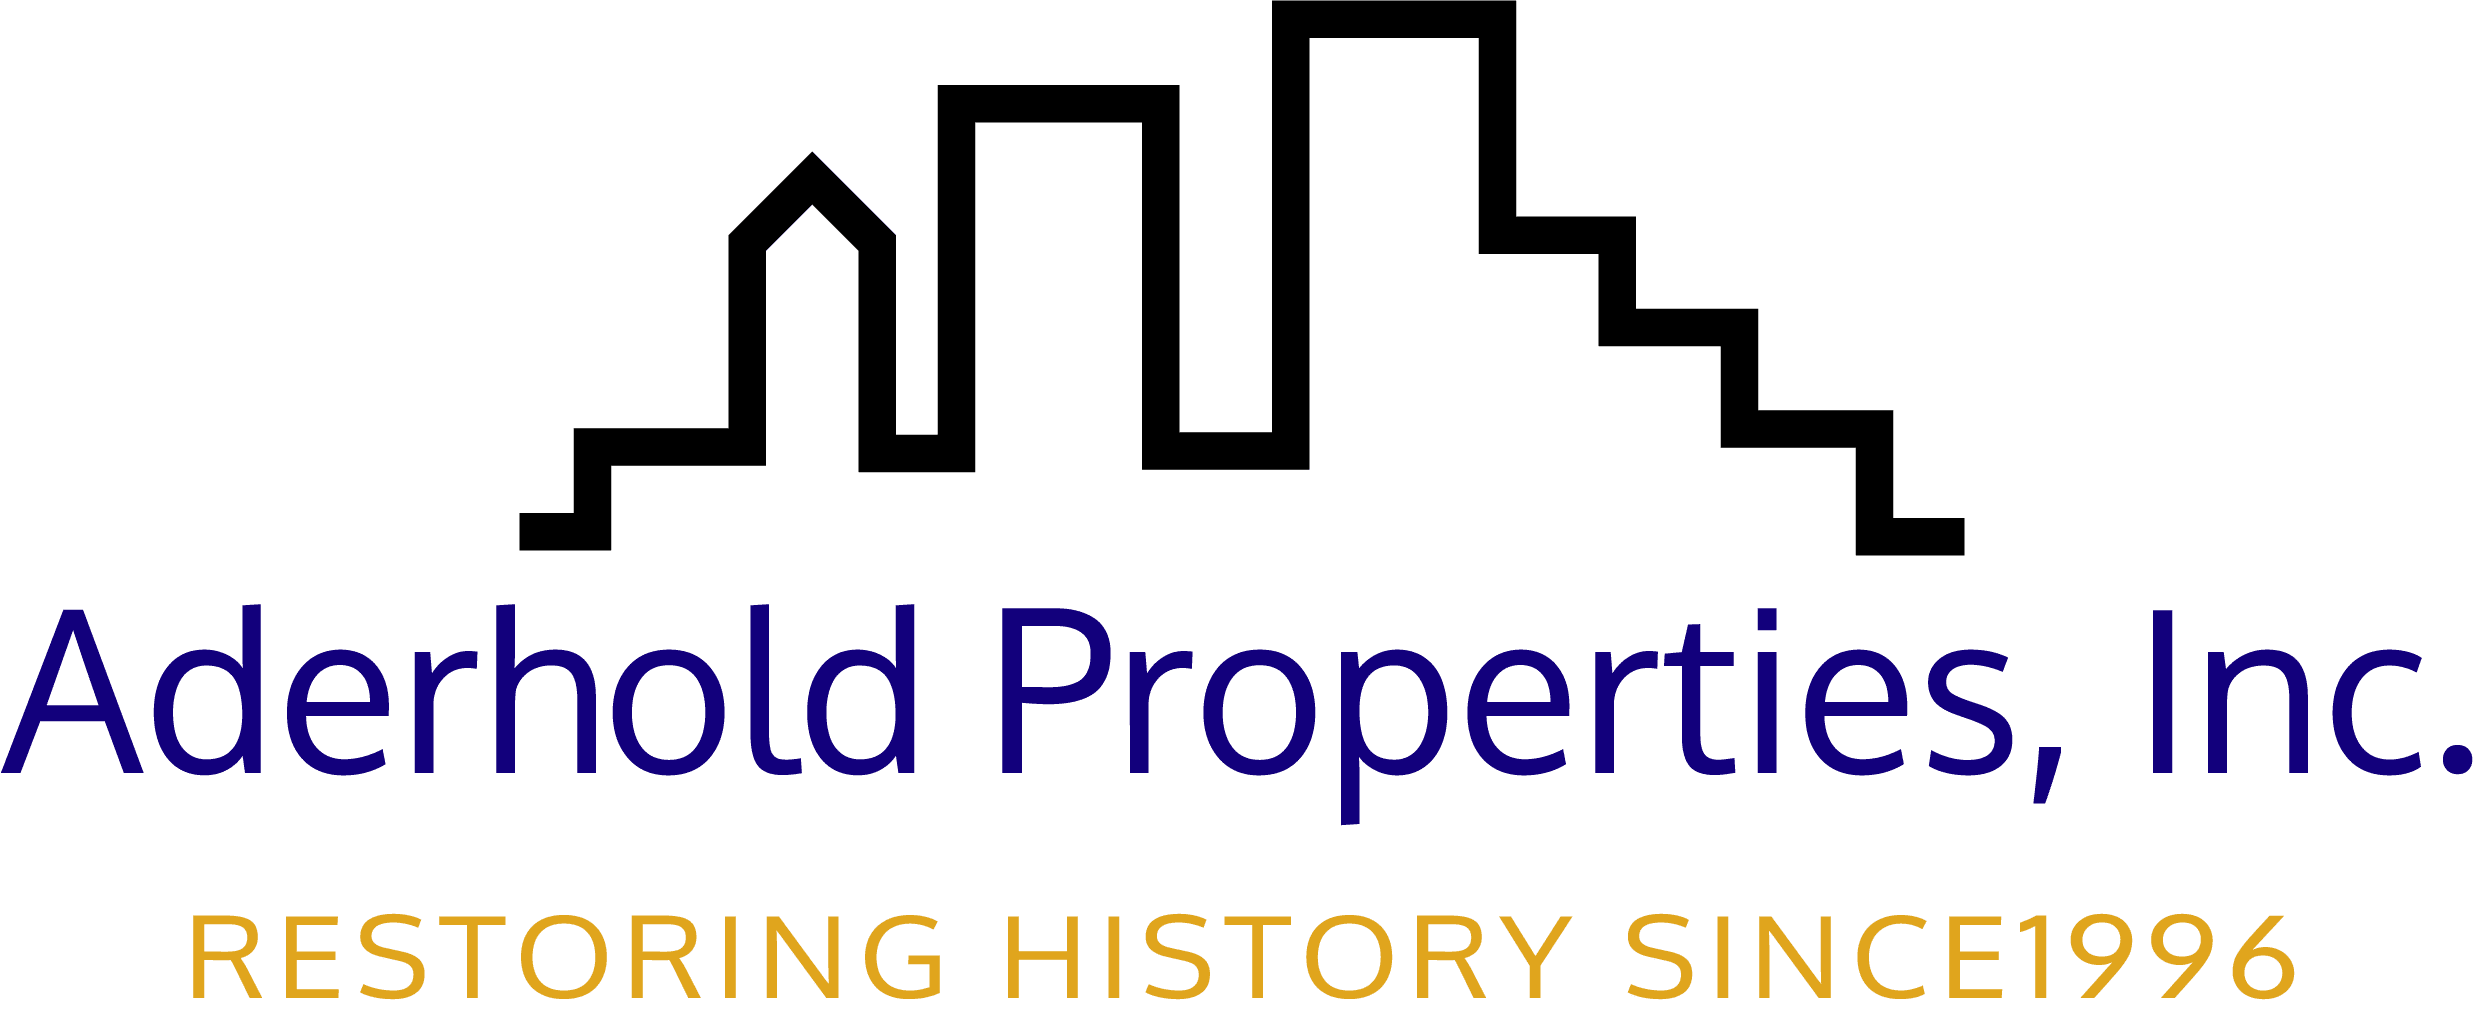 Aderhold Properties, Inc.